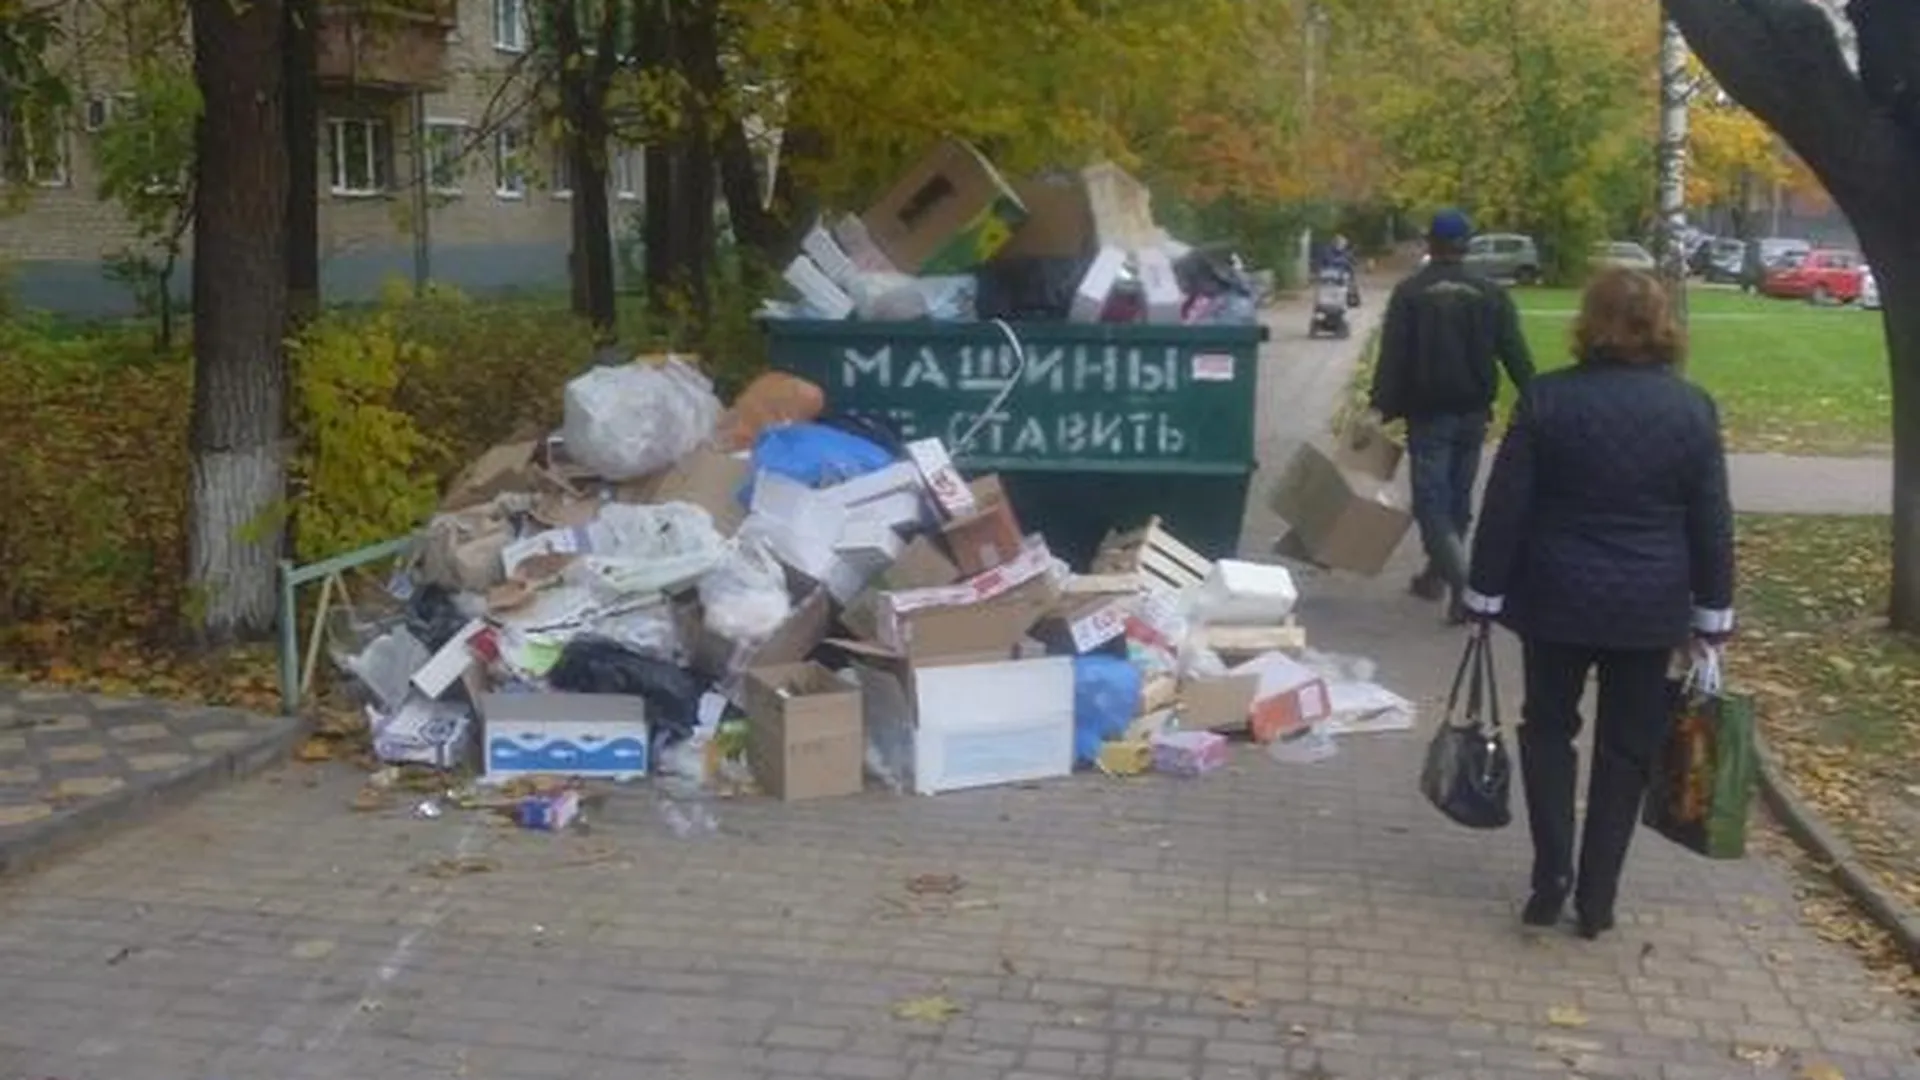 ТЦ в Пушкино сваливал мусор рядом с памятником ВОВ